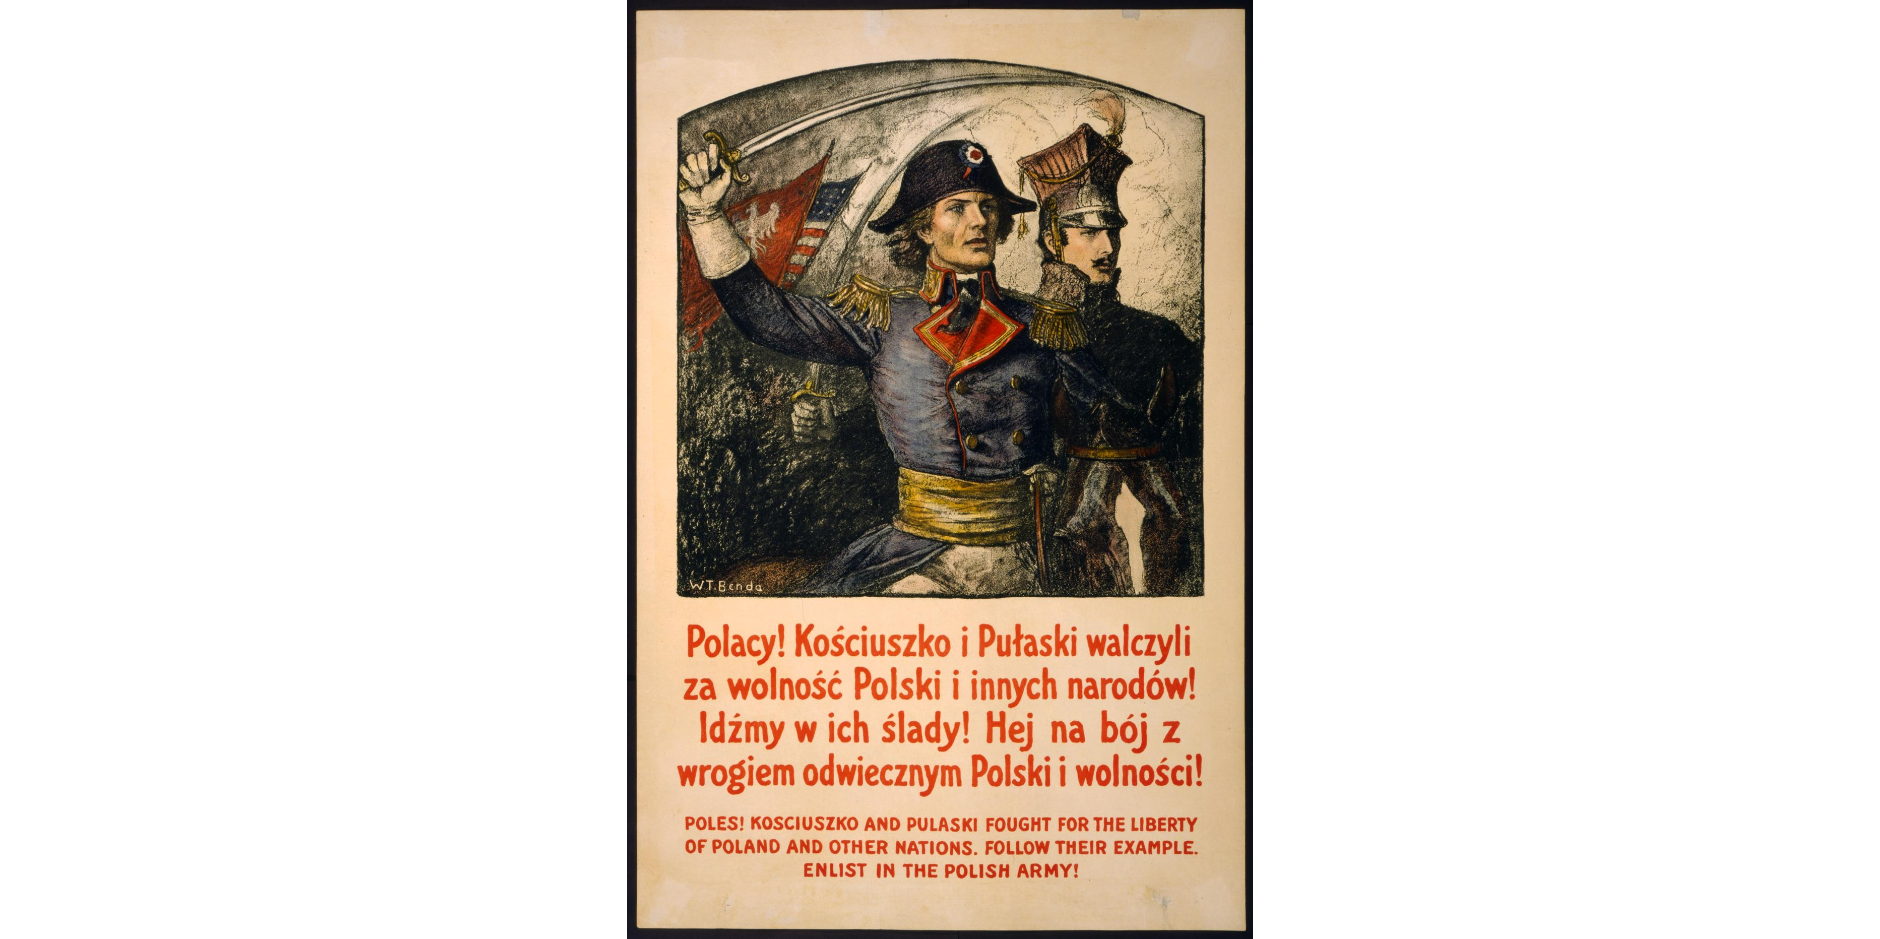 Plakat przedstawia dwóch wojskowych polskich w mundurach z końca osiemnastego wieku - Kościuszkę i Pułaskiego. Kościuszko trzyma uniesioną w górze szablę, za plecami mężczyzn widać sztandar z białym orłem w koronie.